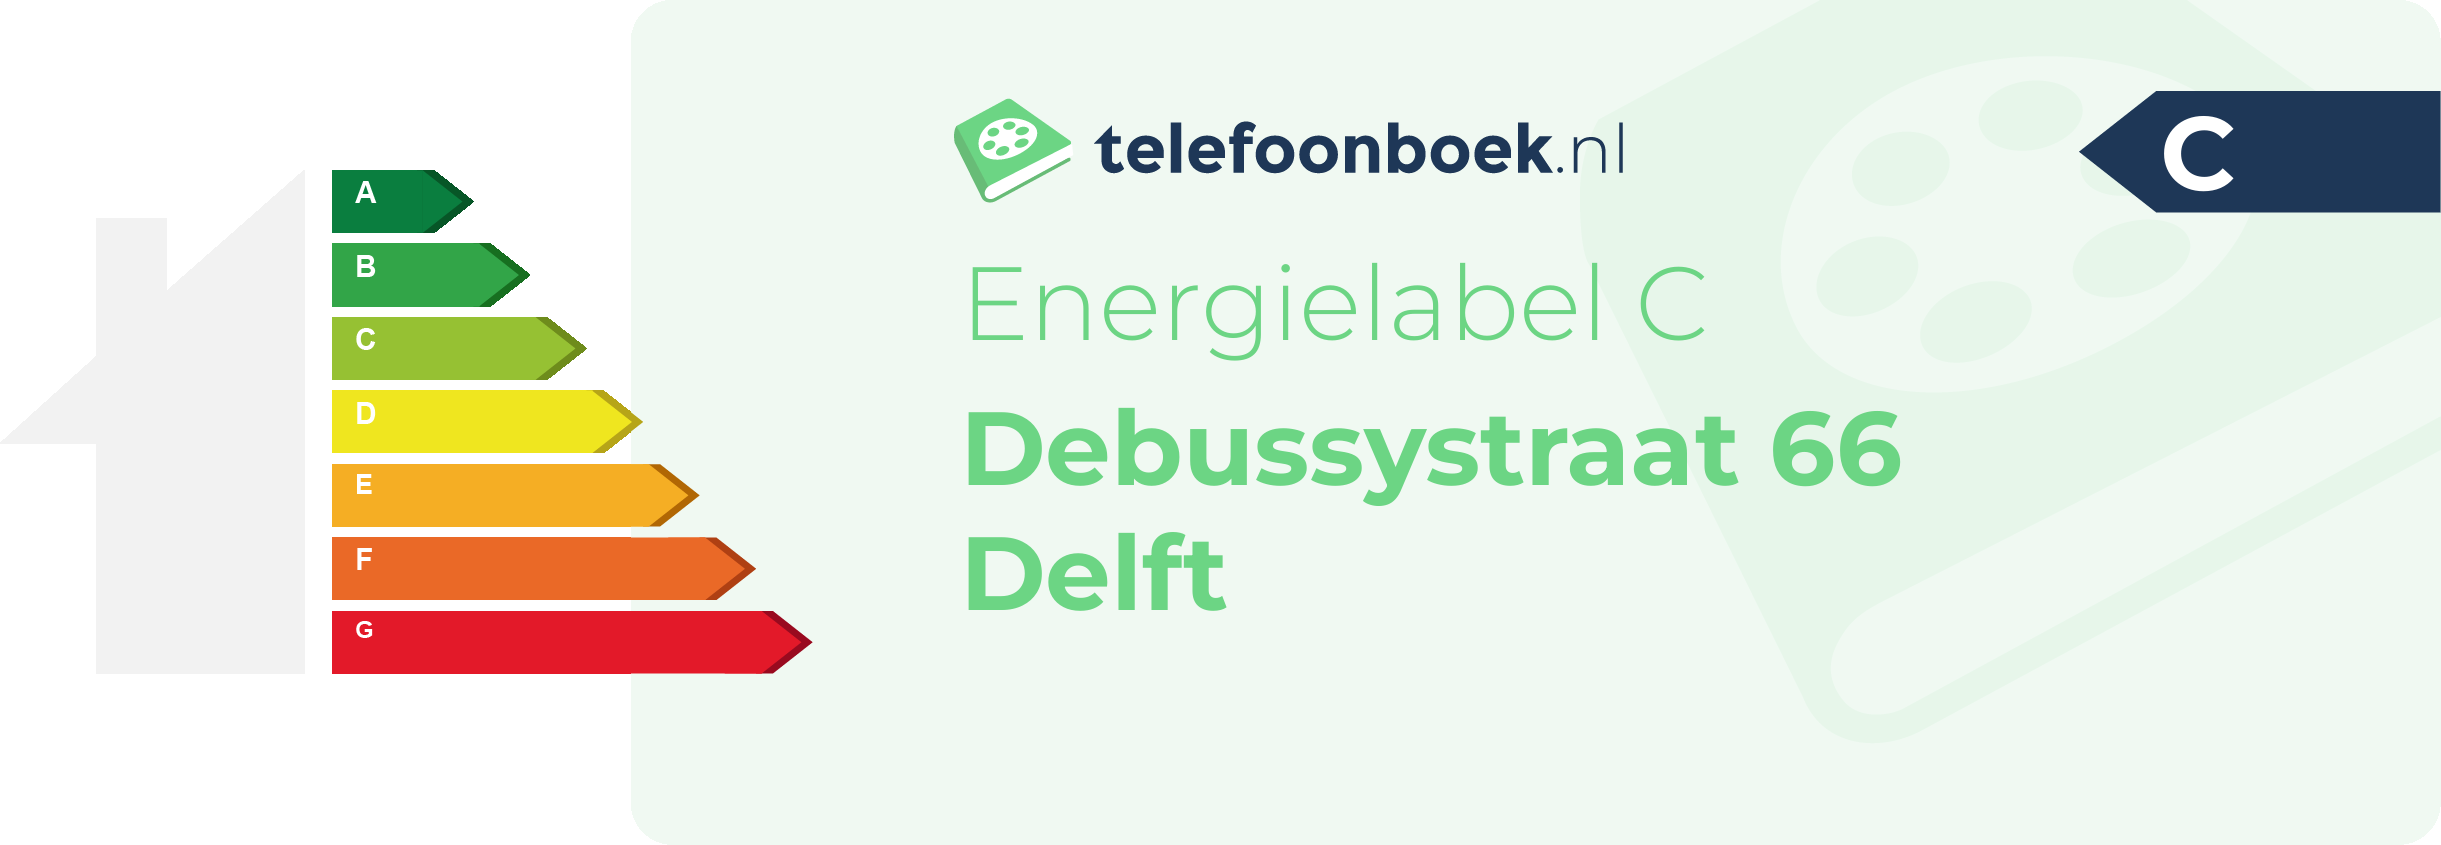 Energielabel Debussystraat 66 Delft